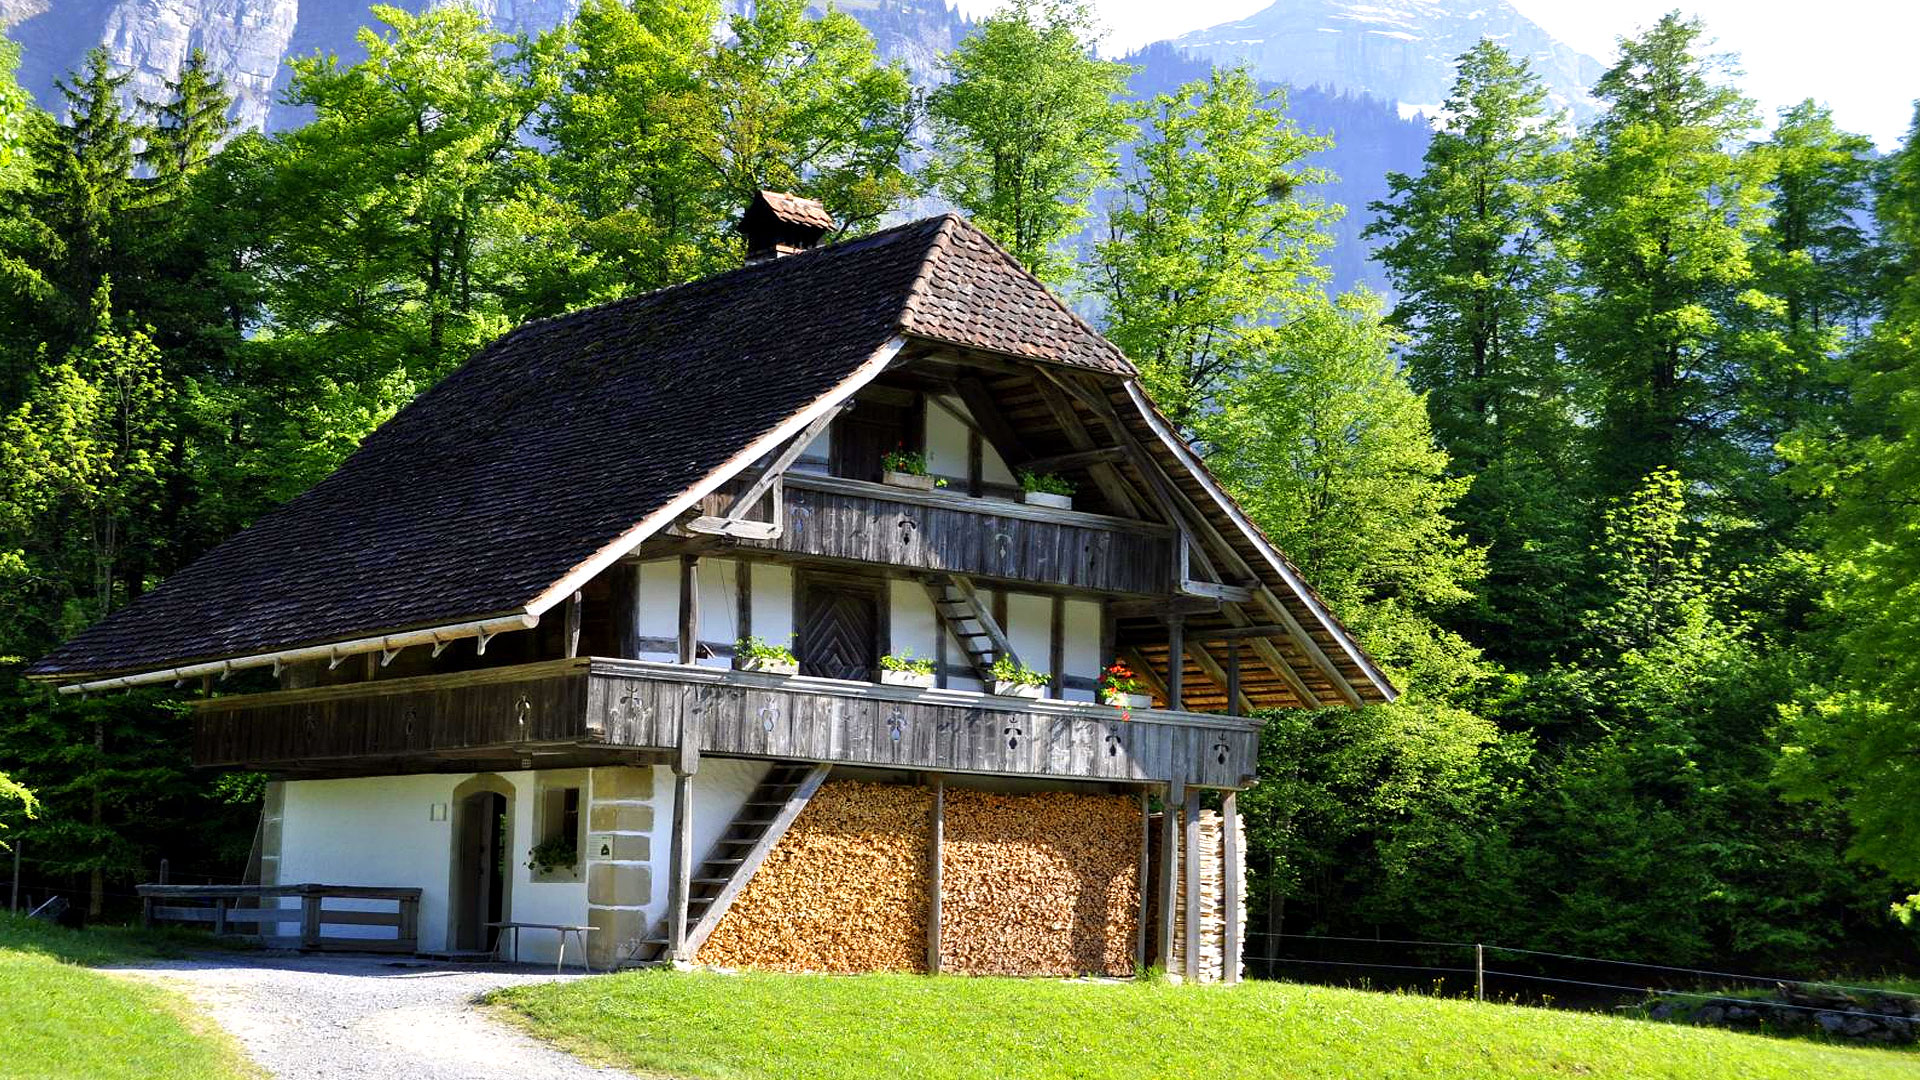 Le musée suisse de l’habitat rural